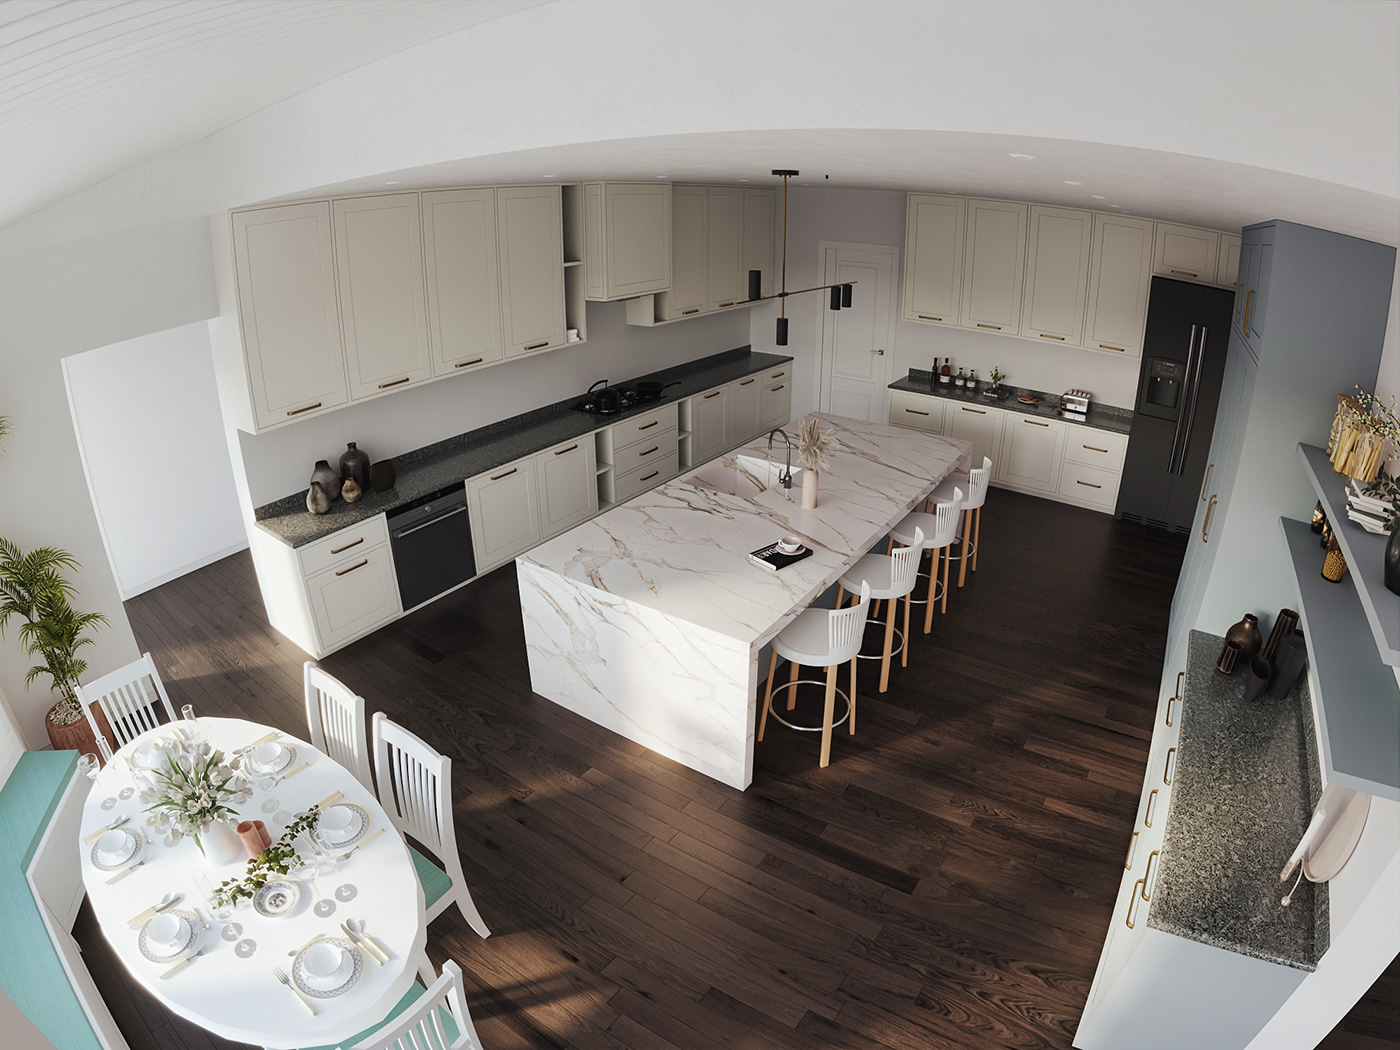 Classic European Interior interior design  kitchen kitchen design minimal Minimalism minimalist Pastle